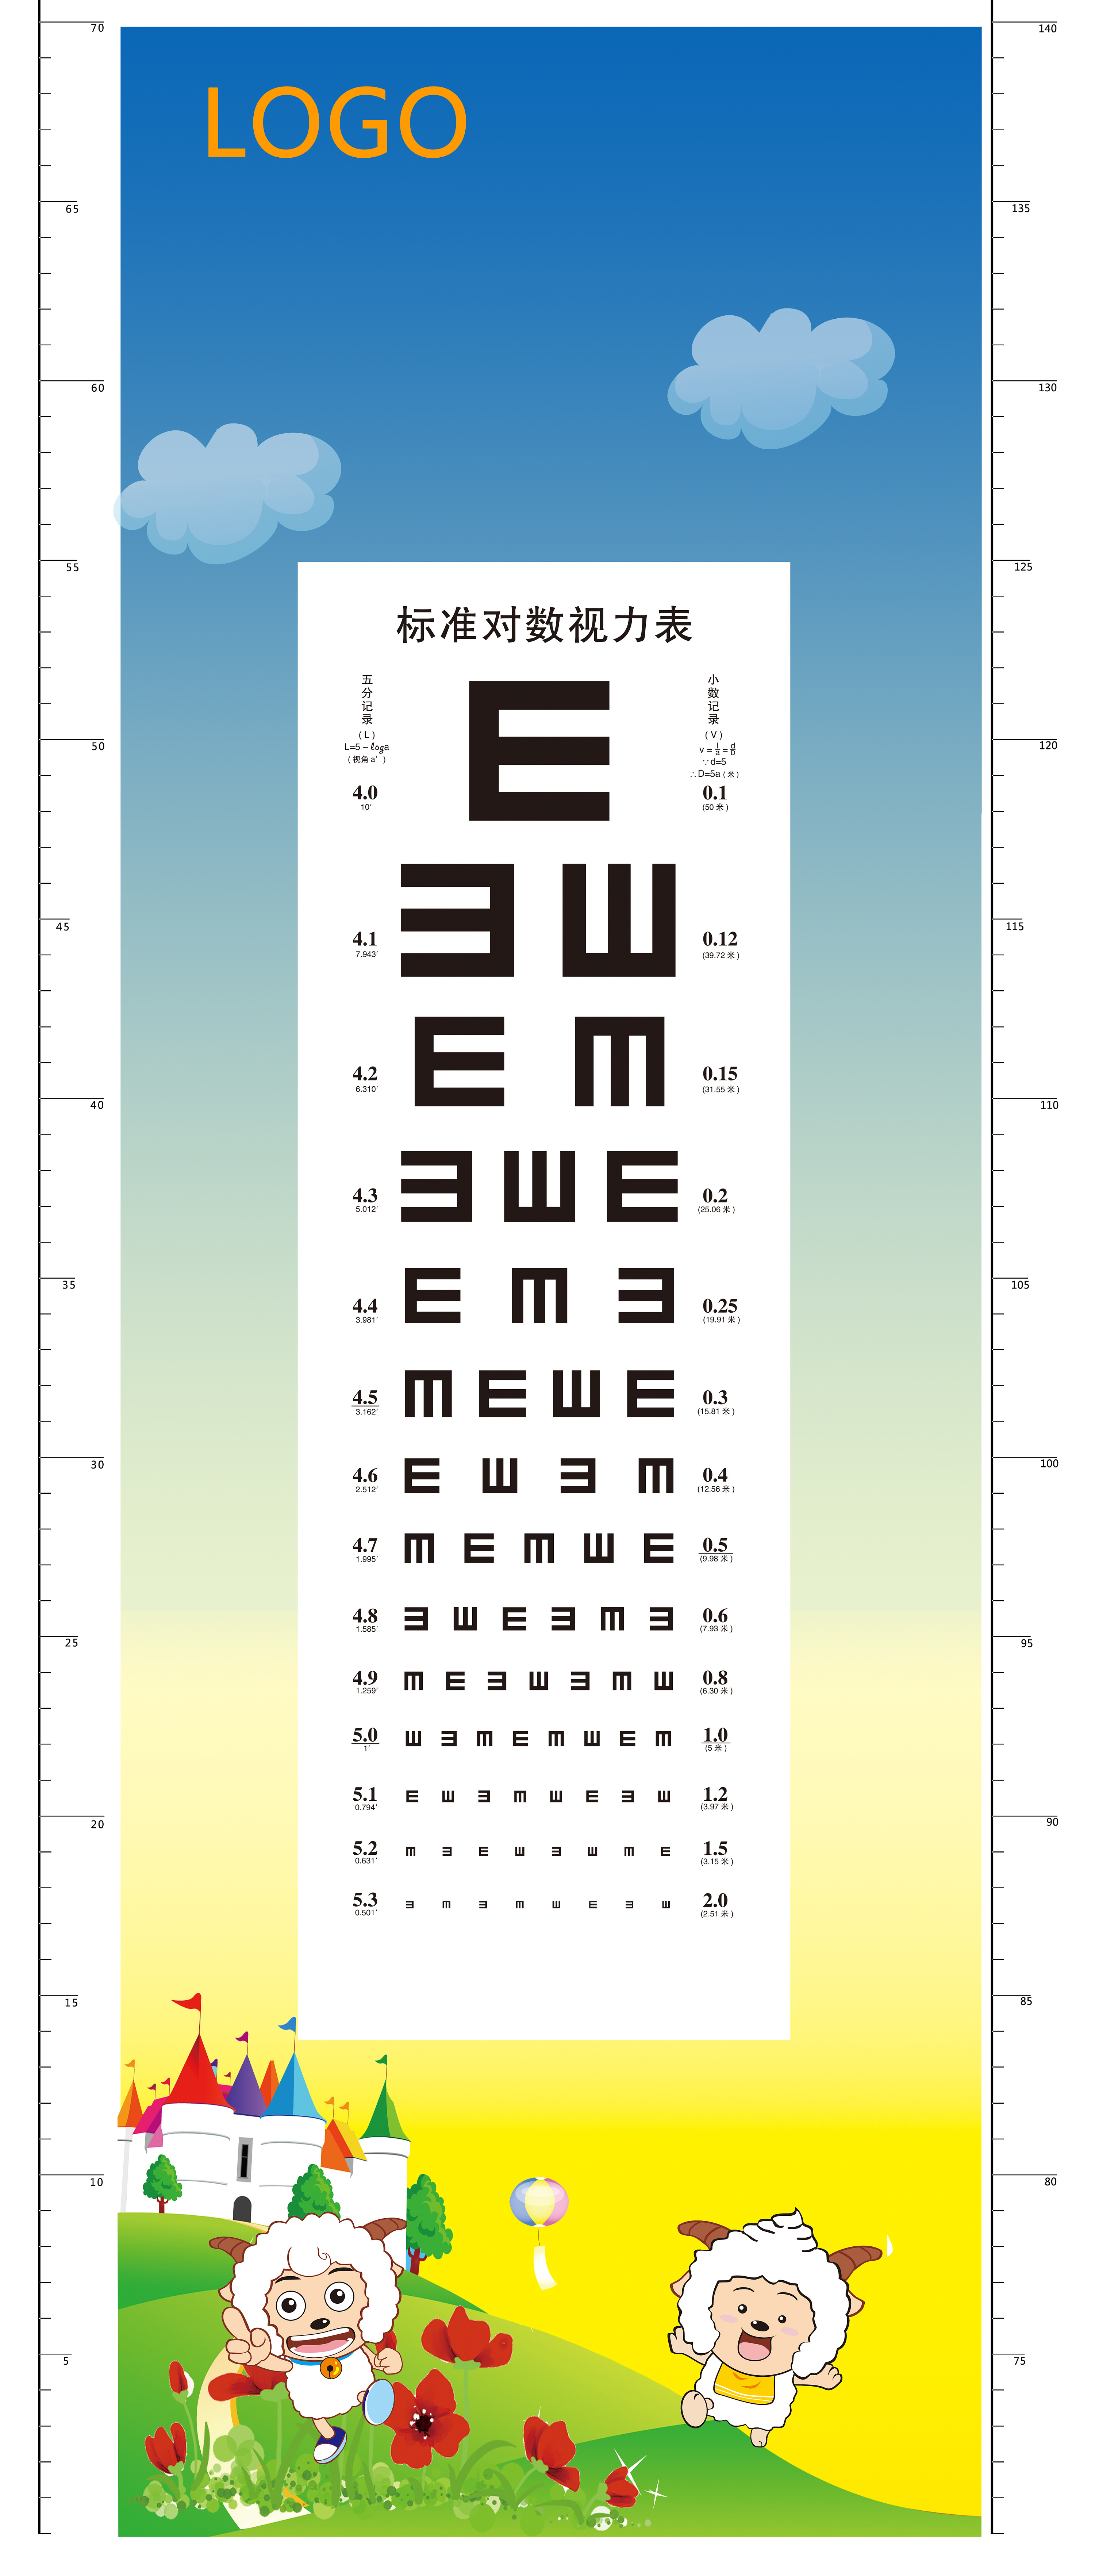 视力表大图_医院体检视力表大图_国际标准视力表大图